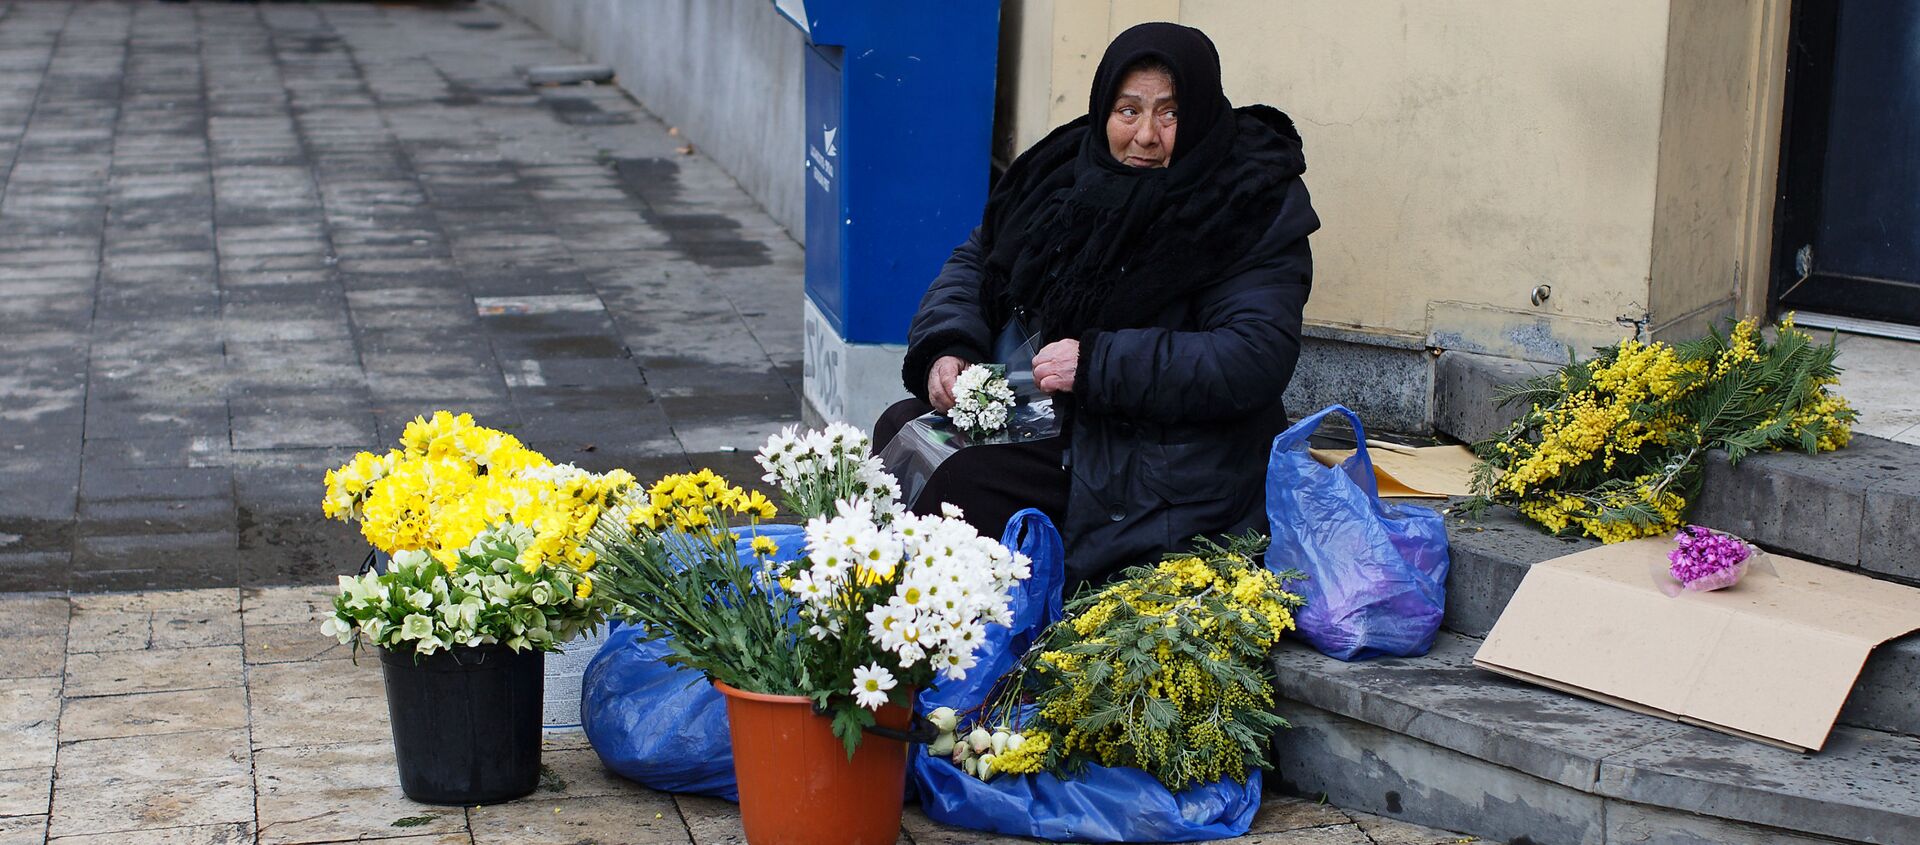 Пожилая продавщица цветов на улице торгует и зимой - Sputnik Грузия, 1920, 11.04.2021